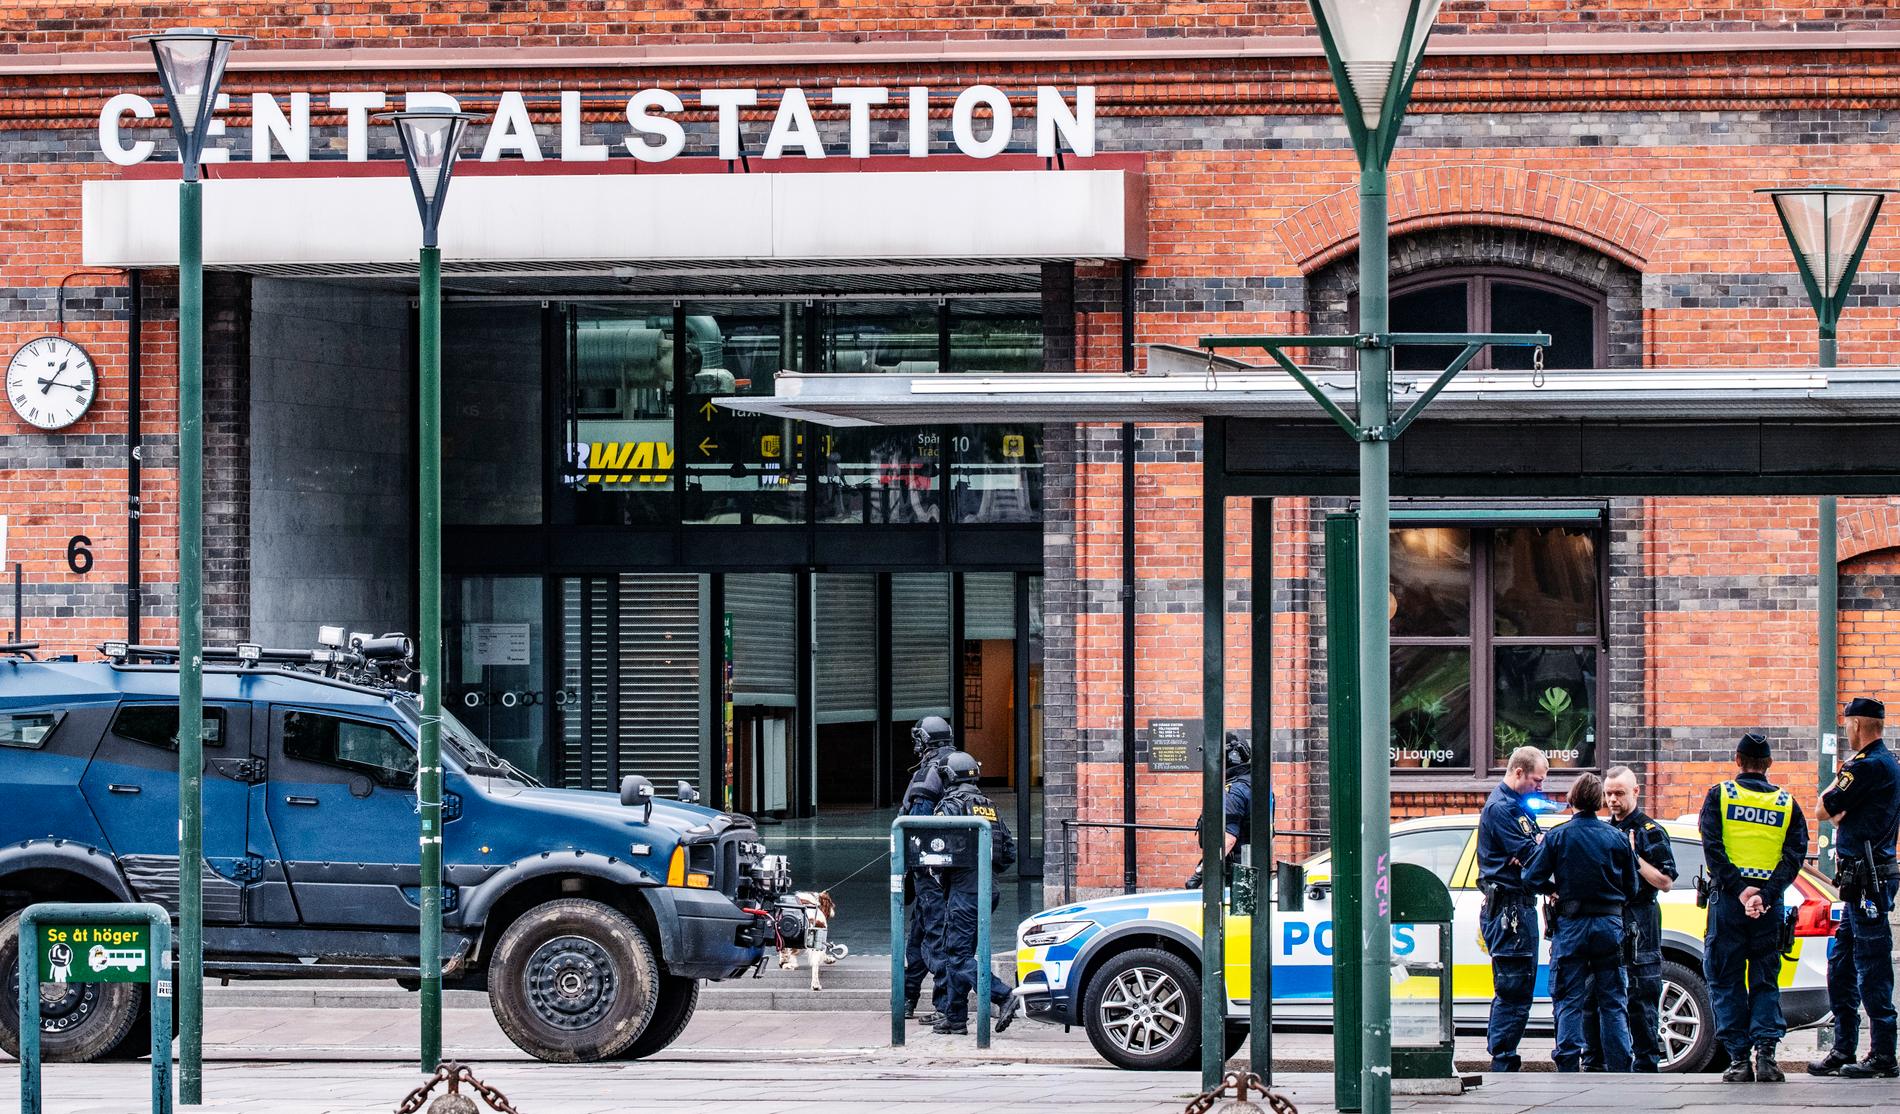 En man har blivit skjuten av polis på Malmö centralstation efter att ha uppträtt hotfullt och sagt att han hade vapen och sprängmedel i sina väskor. Bombtekniker kallades till platsen och sköt sönder väskorna.